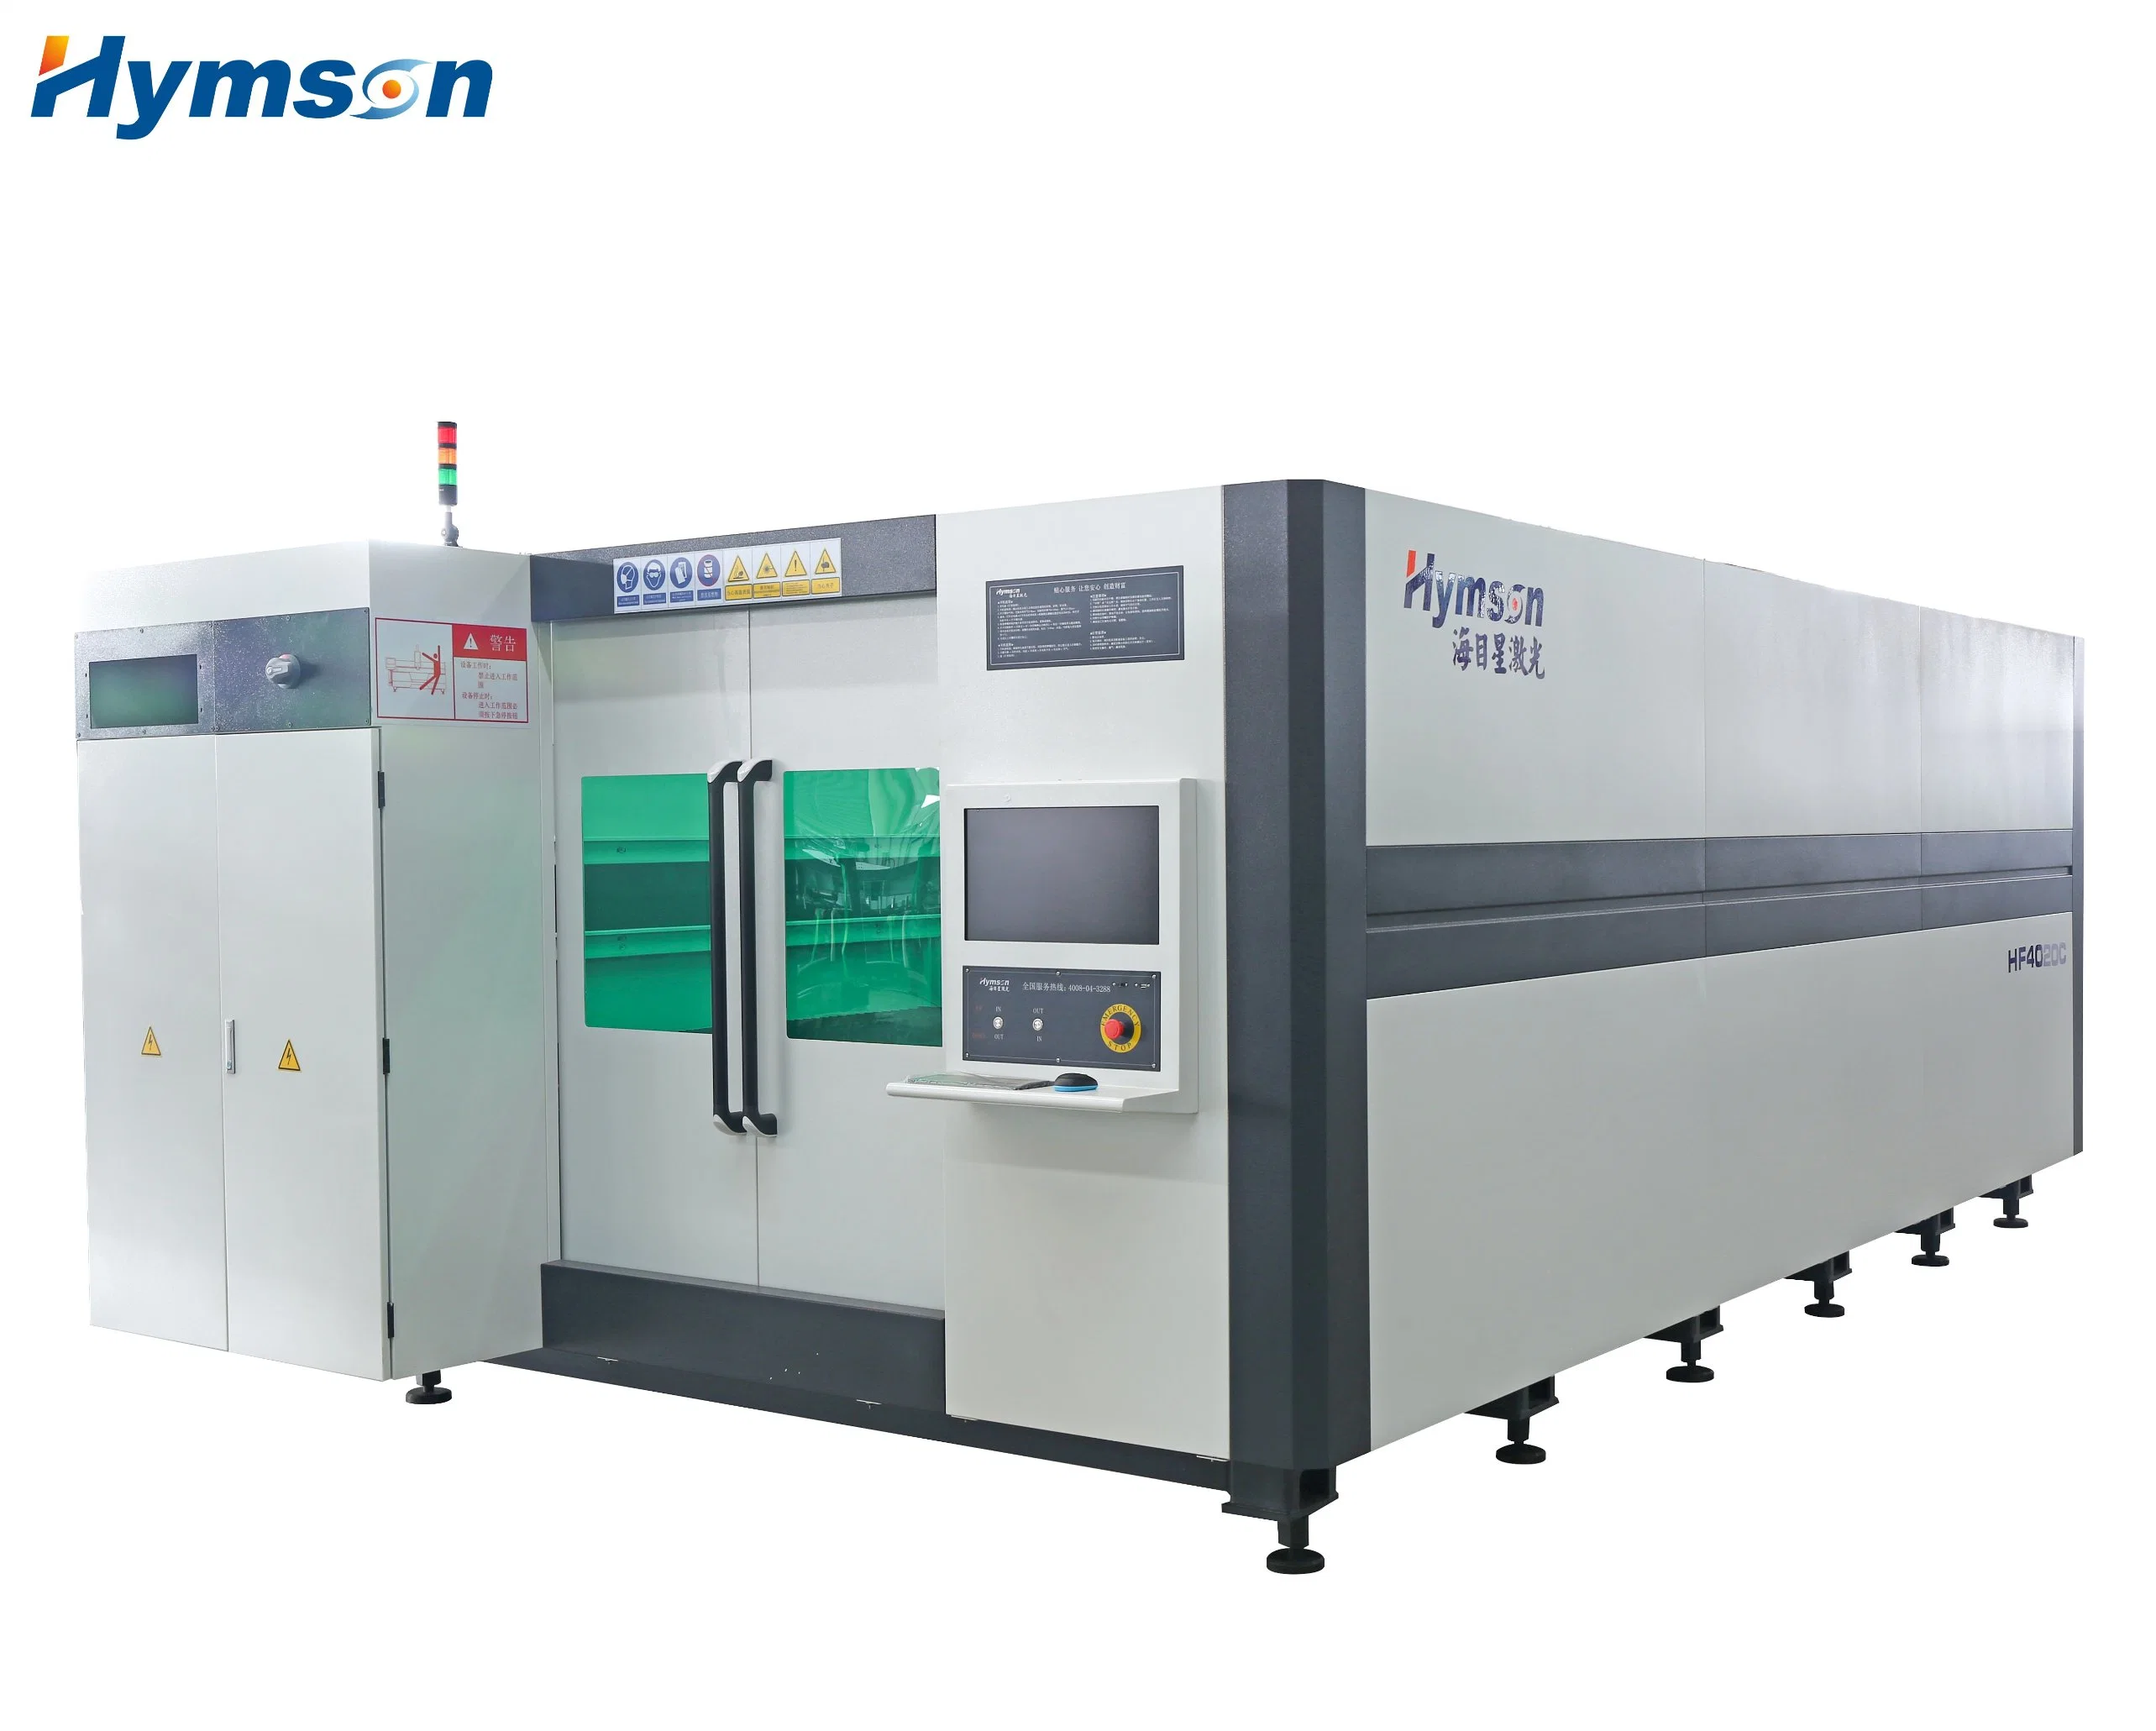 Exchange Platform High Speed Fiber Laser Cutting / CNC Fiber Laser Cutting Machine for Metal Sheet Cutting 3015